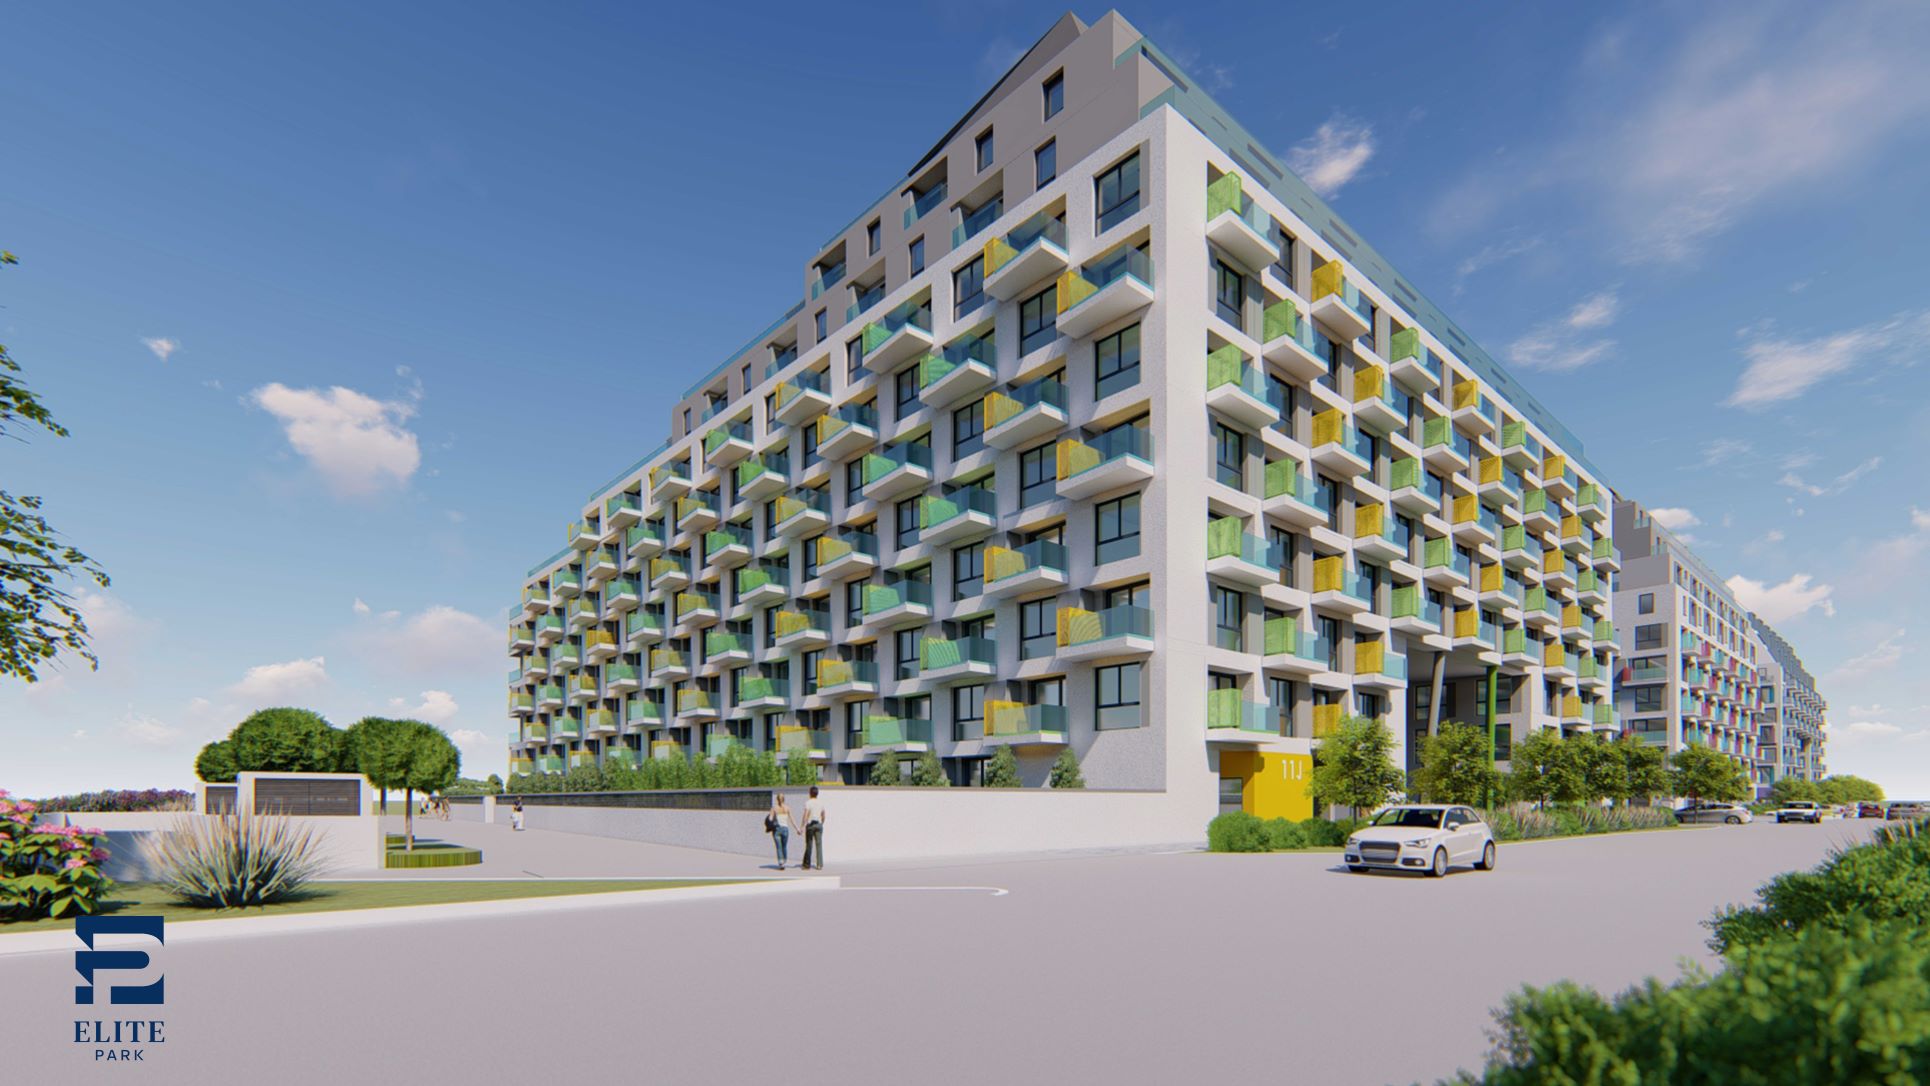 Izgalmas lakóparki projektek Budapesten, ahol az igényeidre szabják a lakásokat